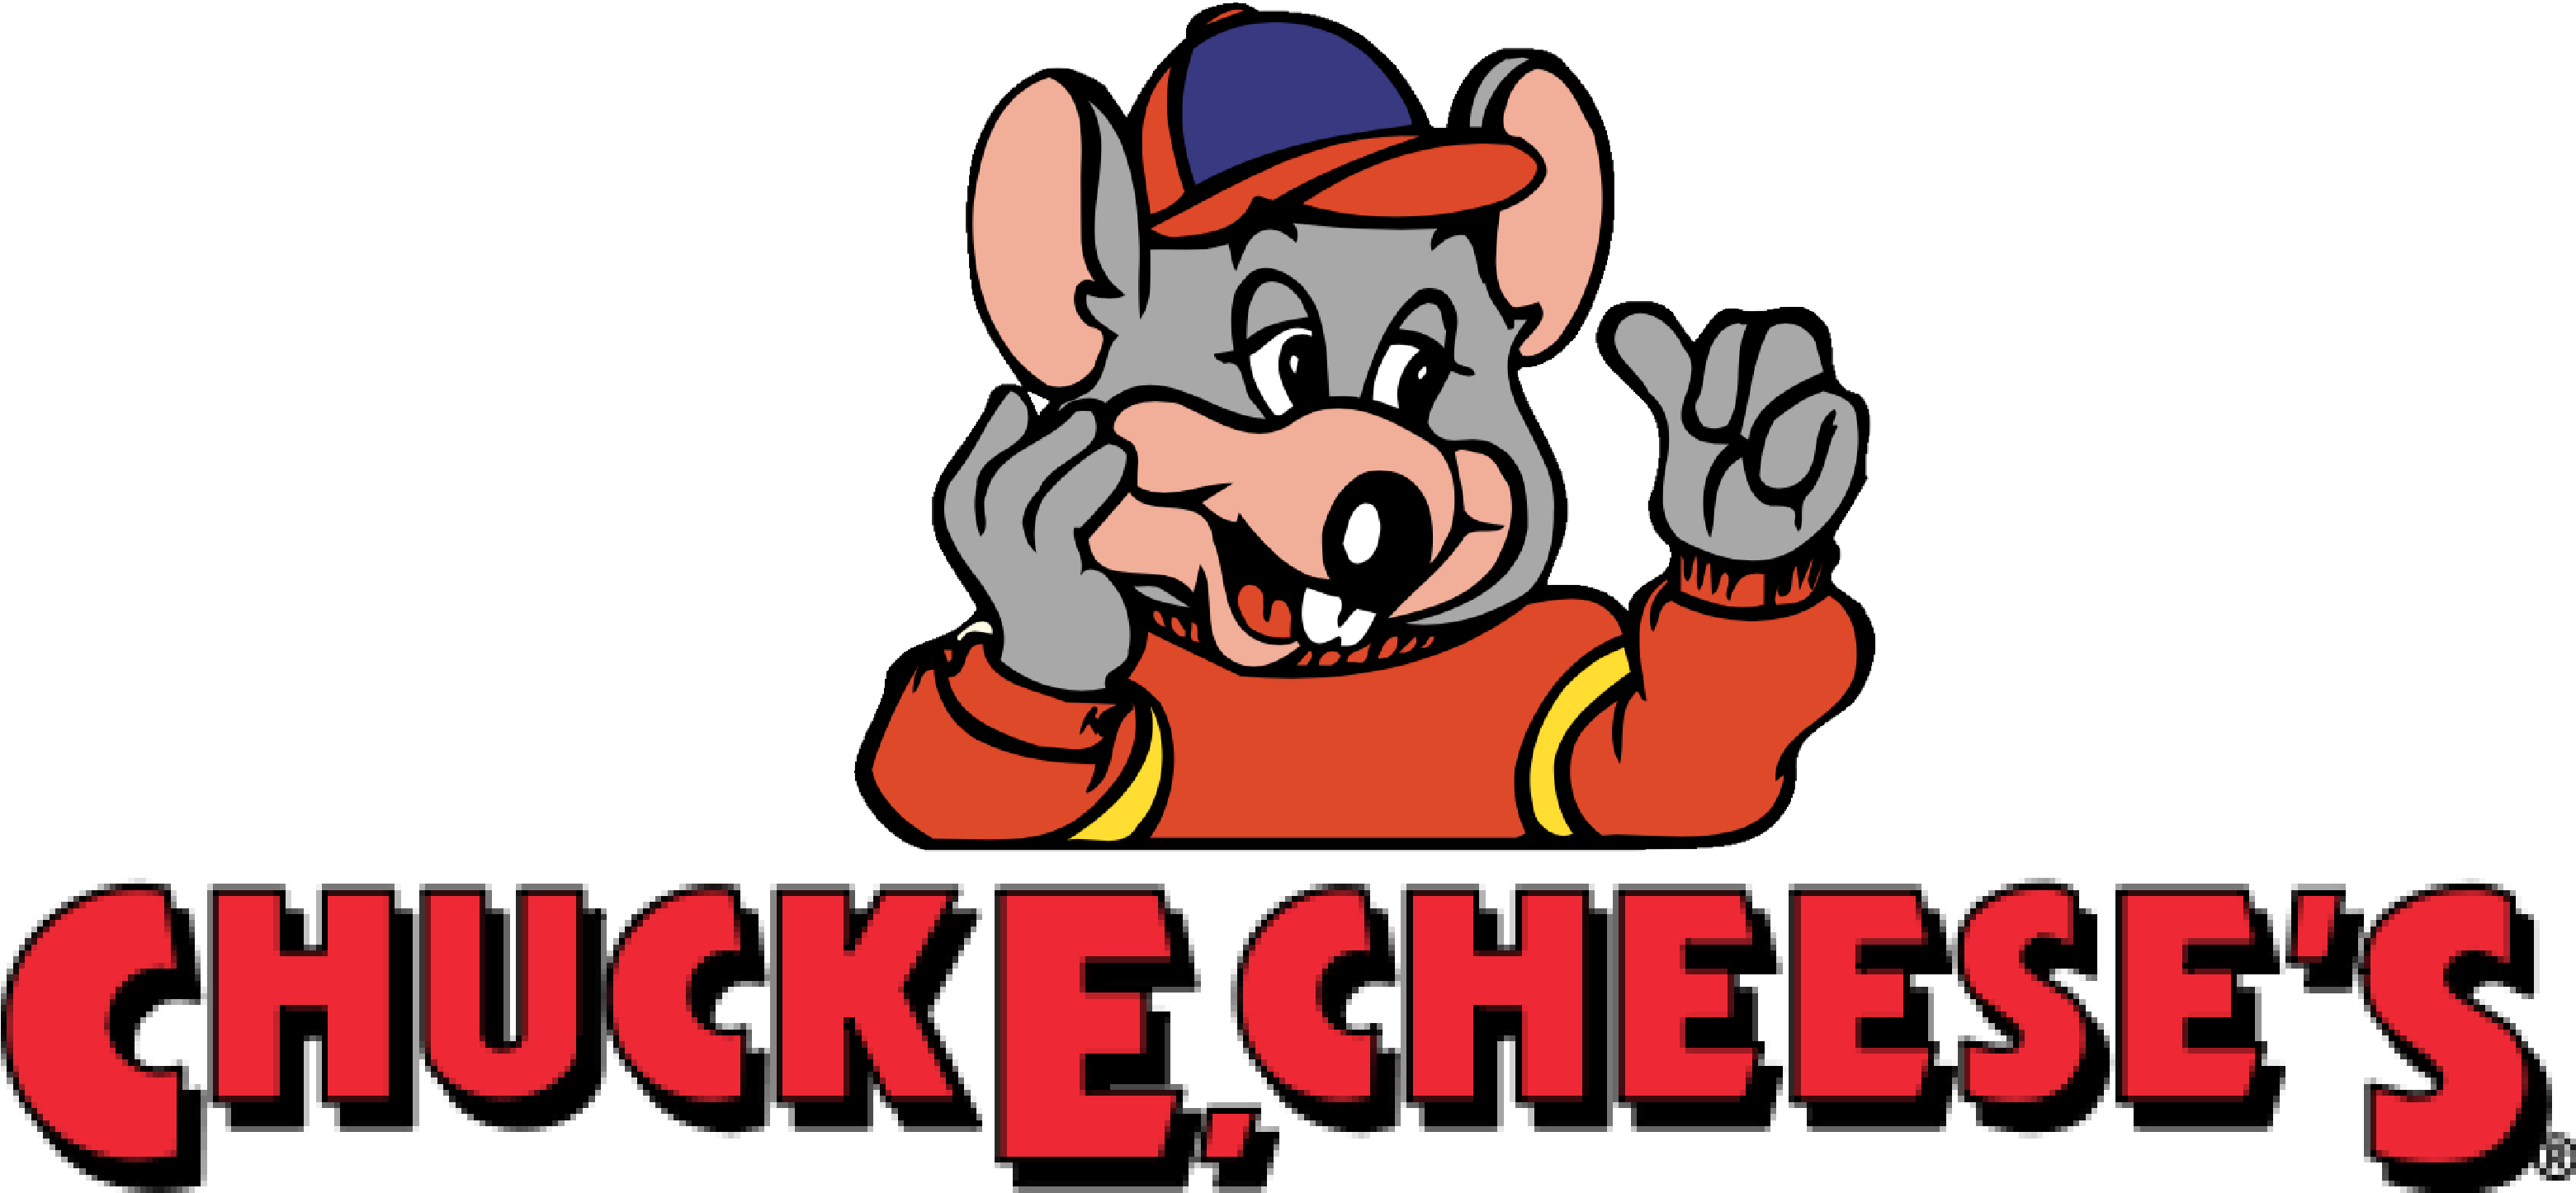 Chuck E Cheese Logo - Chuck E Cheese Logo 1995 Clipart (3121x1446), Png Download